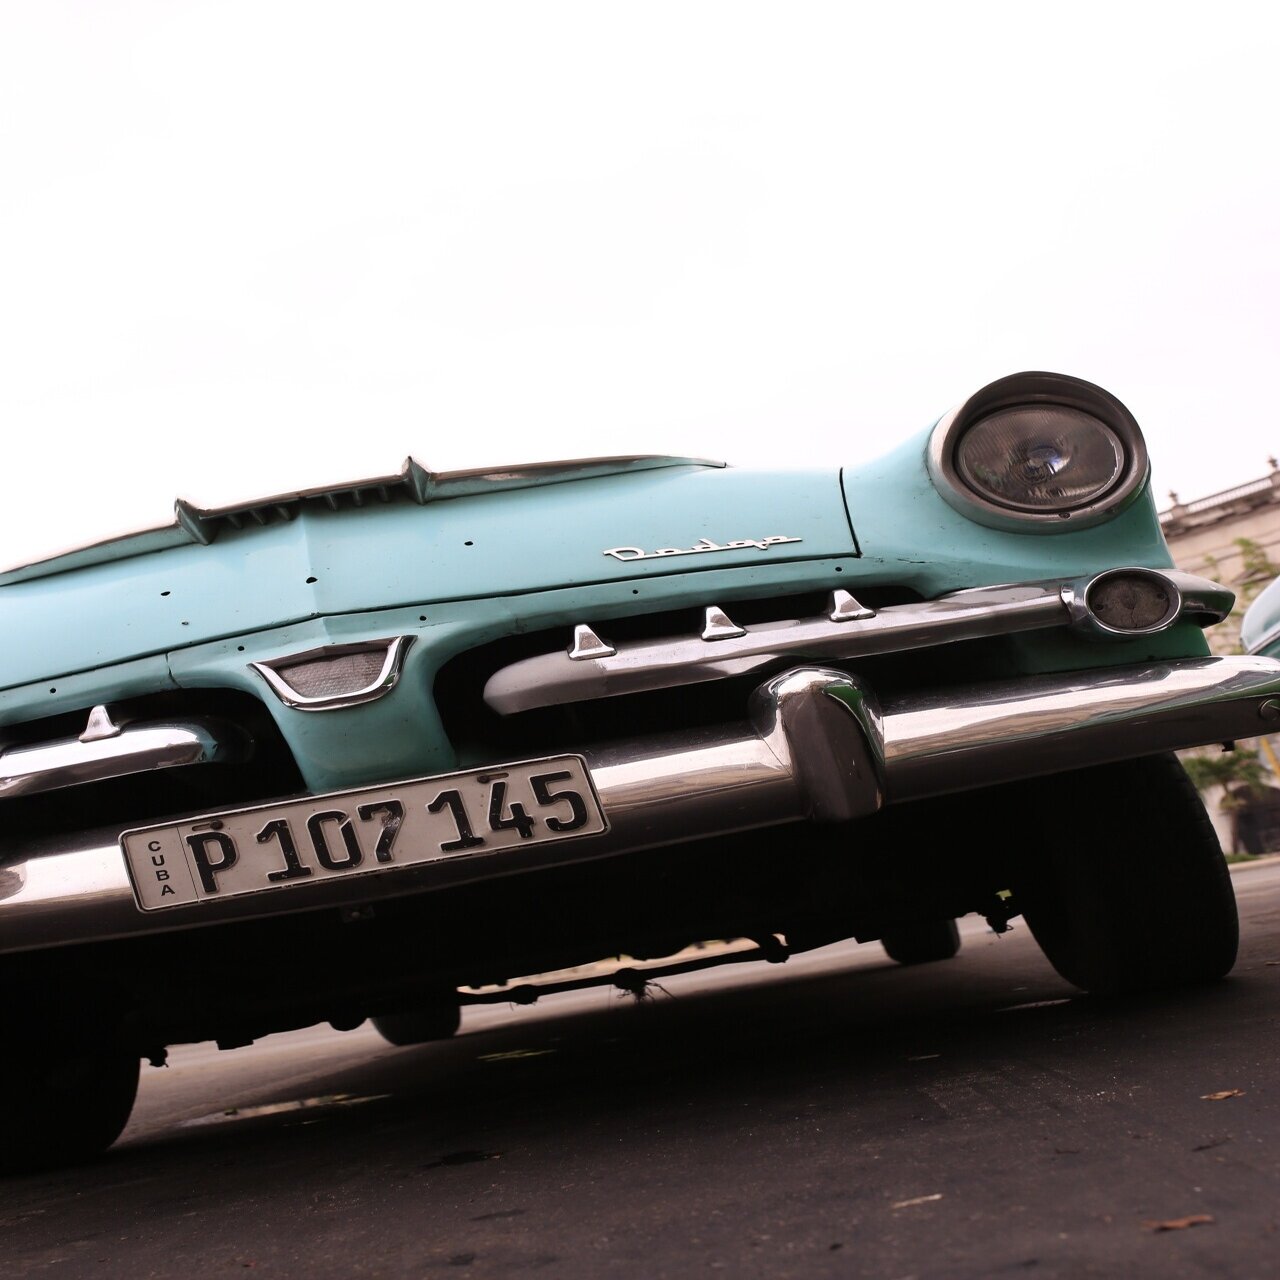 076 Cuba クラシックカーに乗りサルサを踊る 前編 旅するフォトマガジン Mとw Note